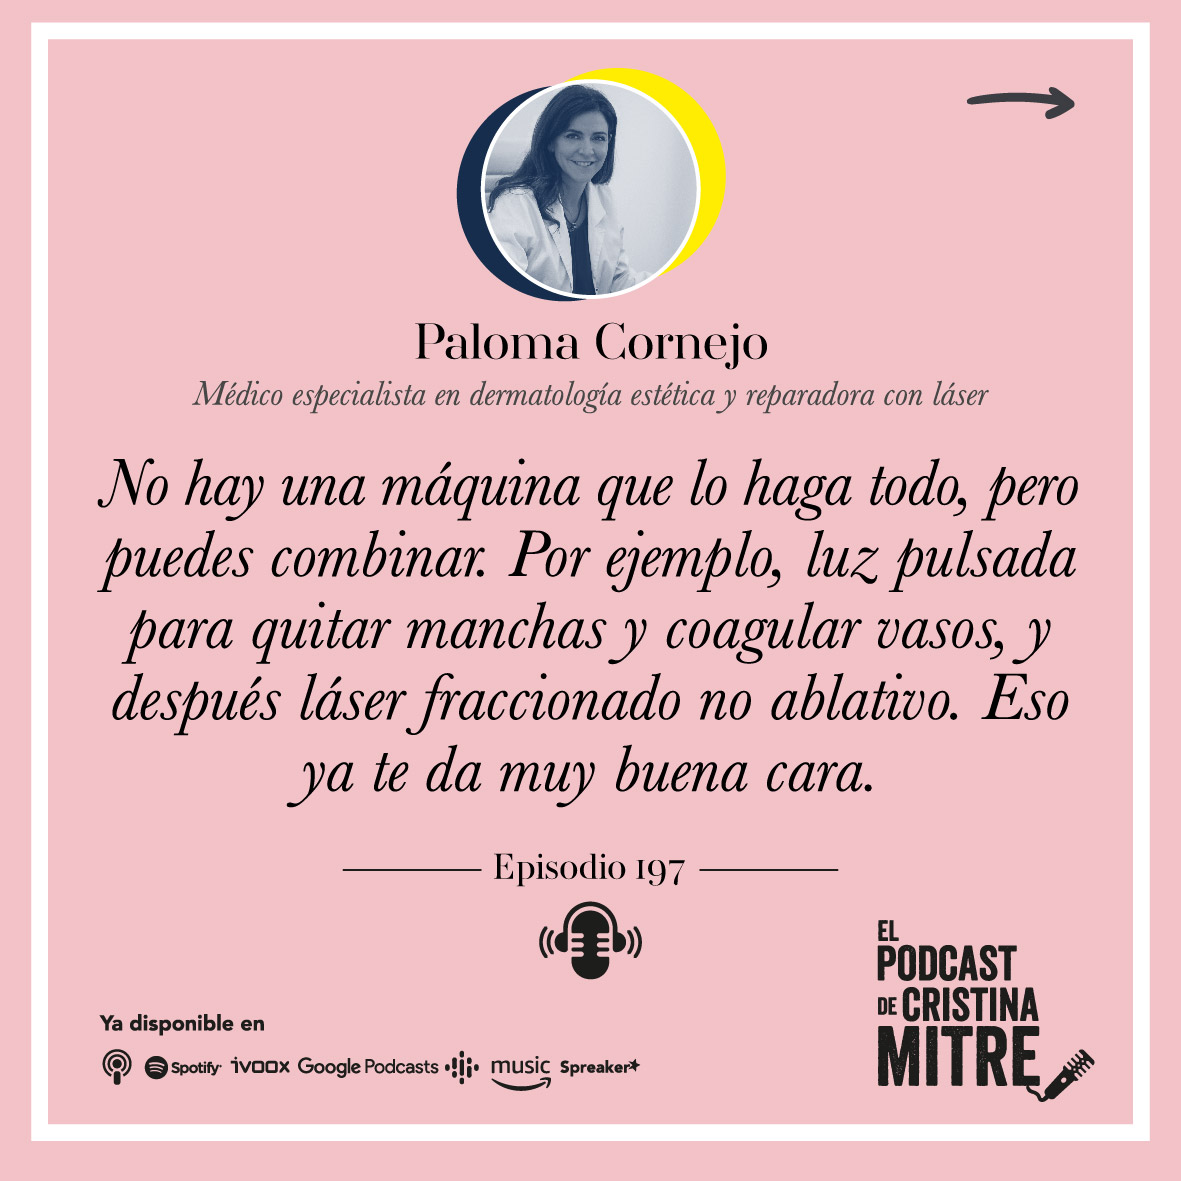 El Podcast de Cristina Mitre Paloma Cornejo tratamientos medicina estetica